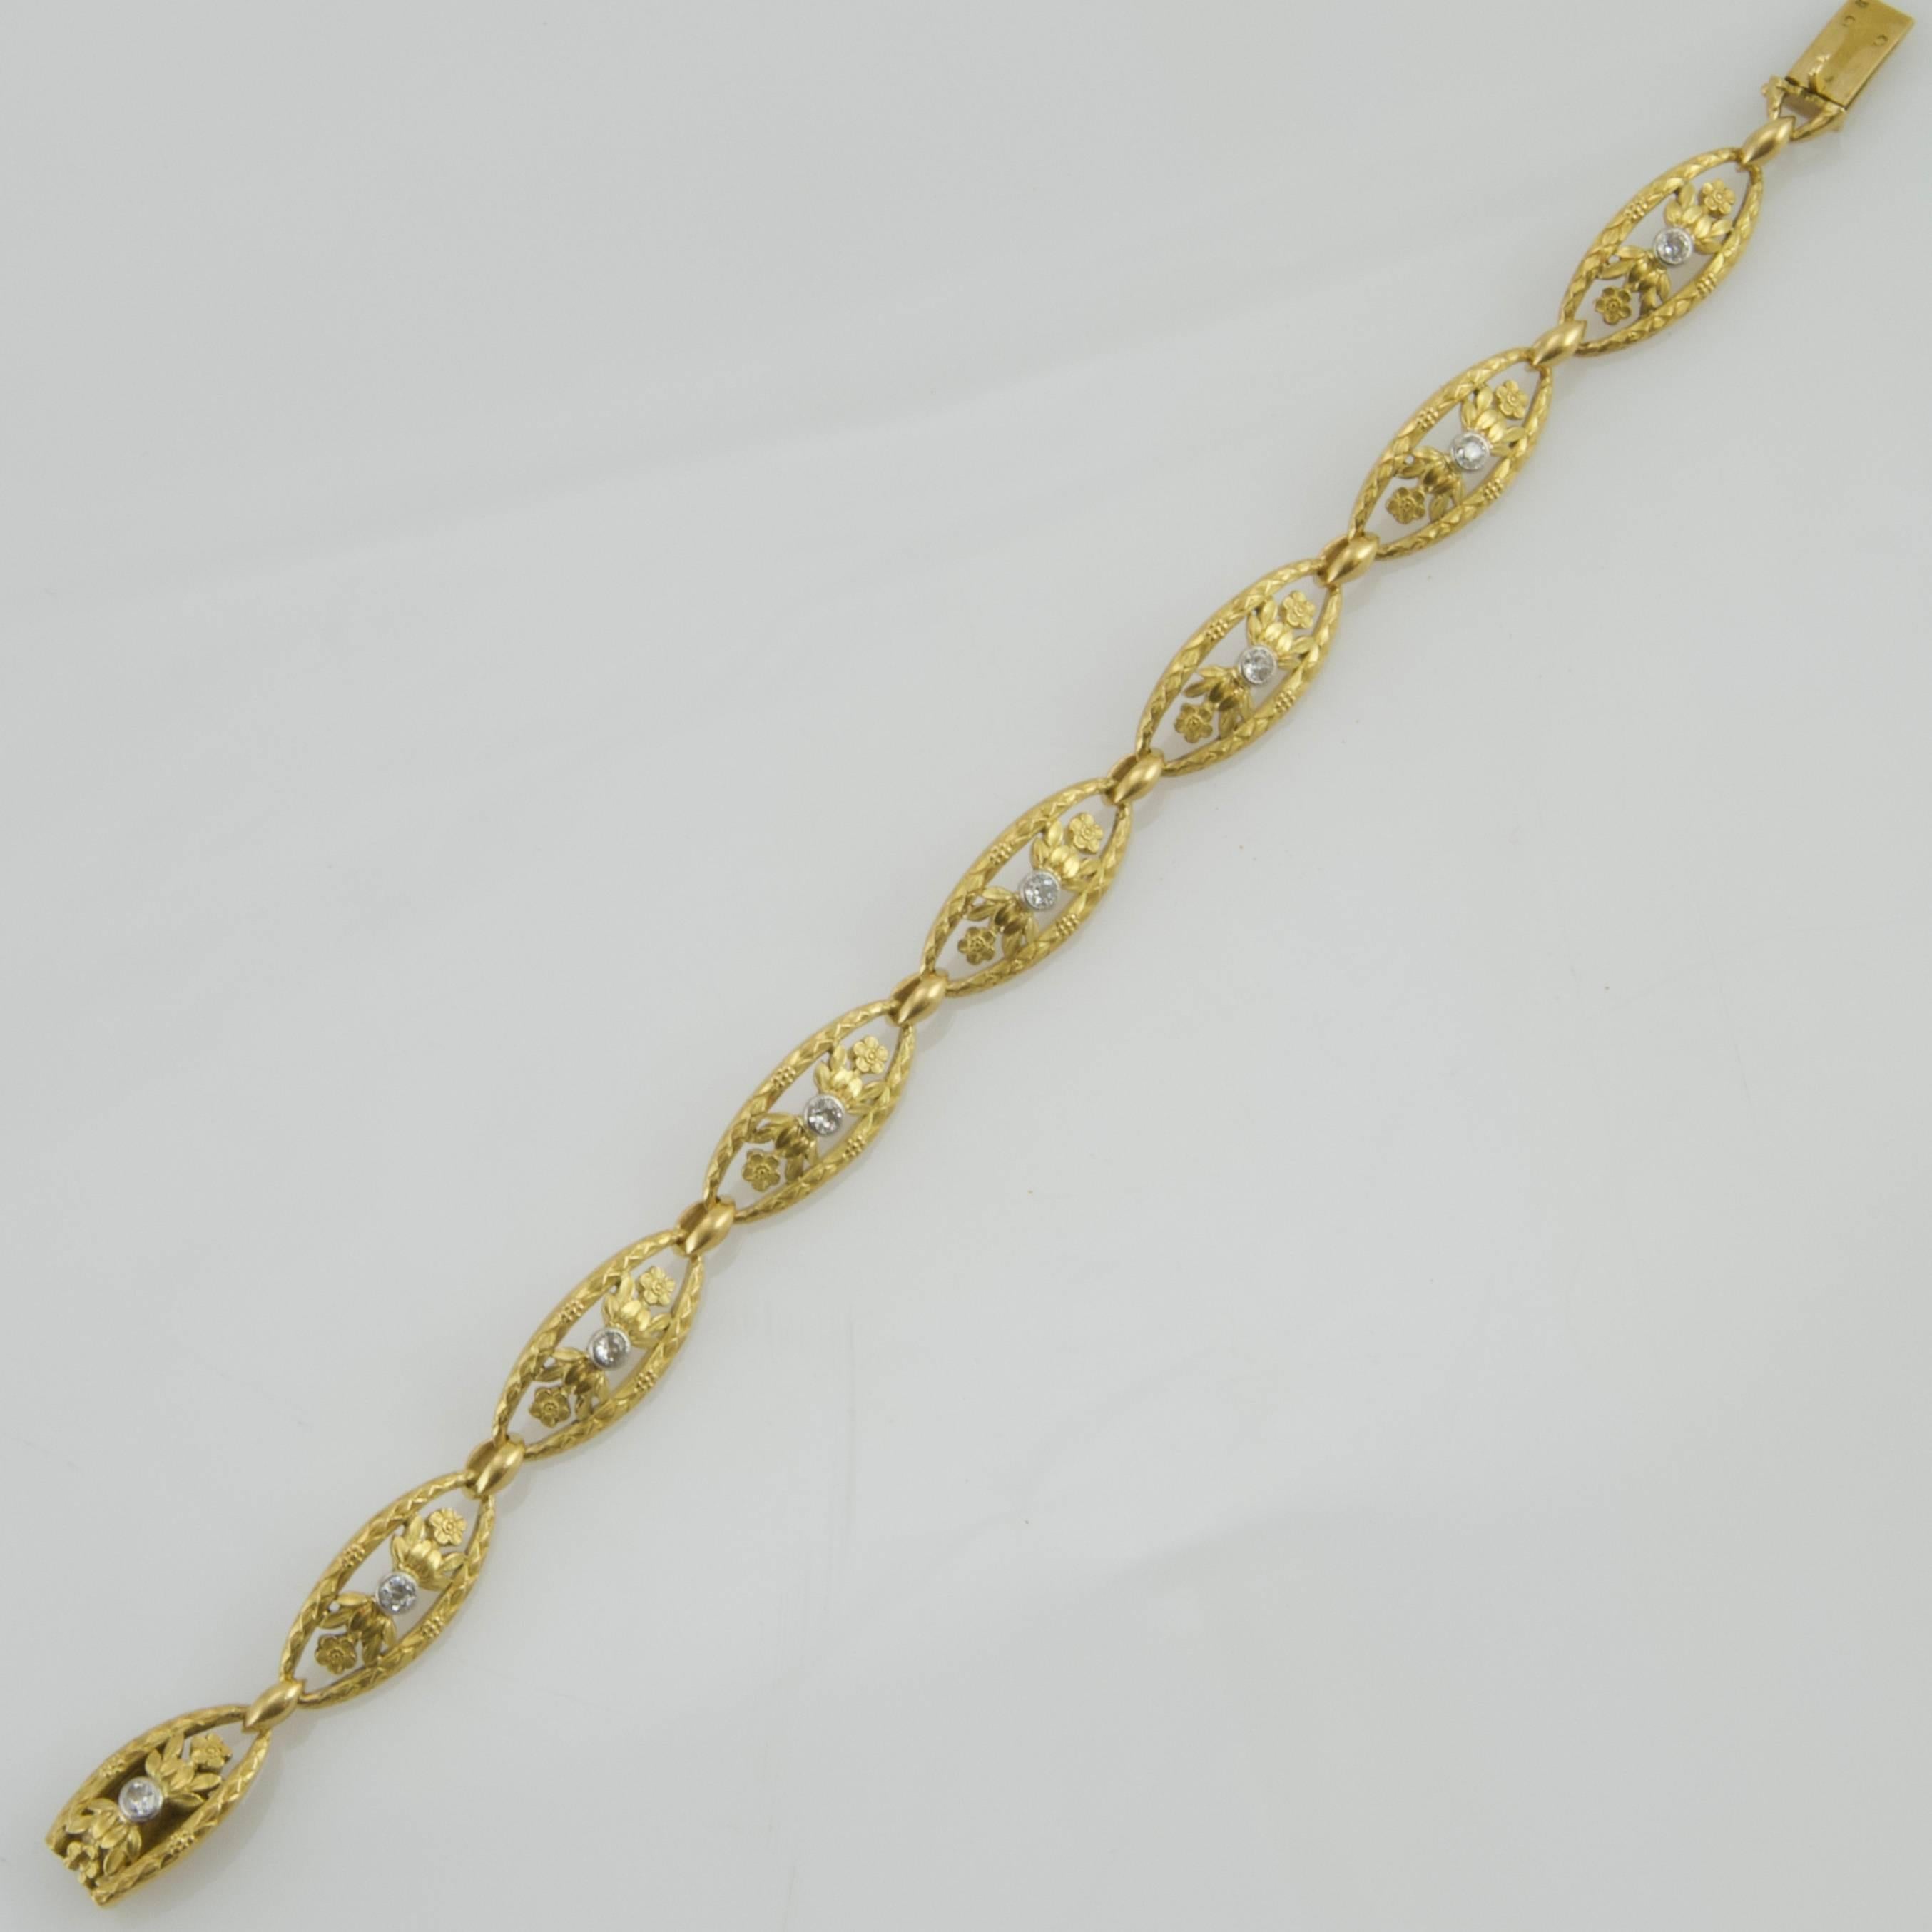 Old European Cut Art Nouveau Yellow Gold and Diamond Bracelet from Paris For Sale